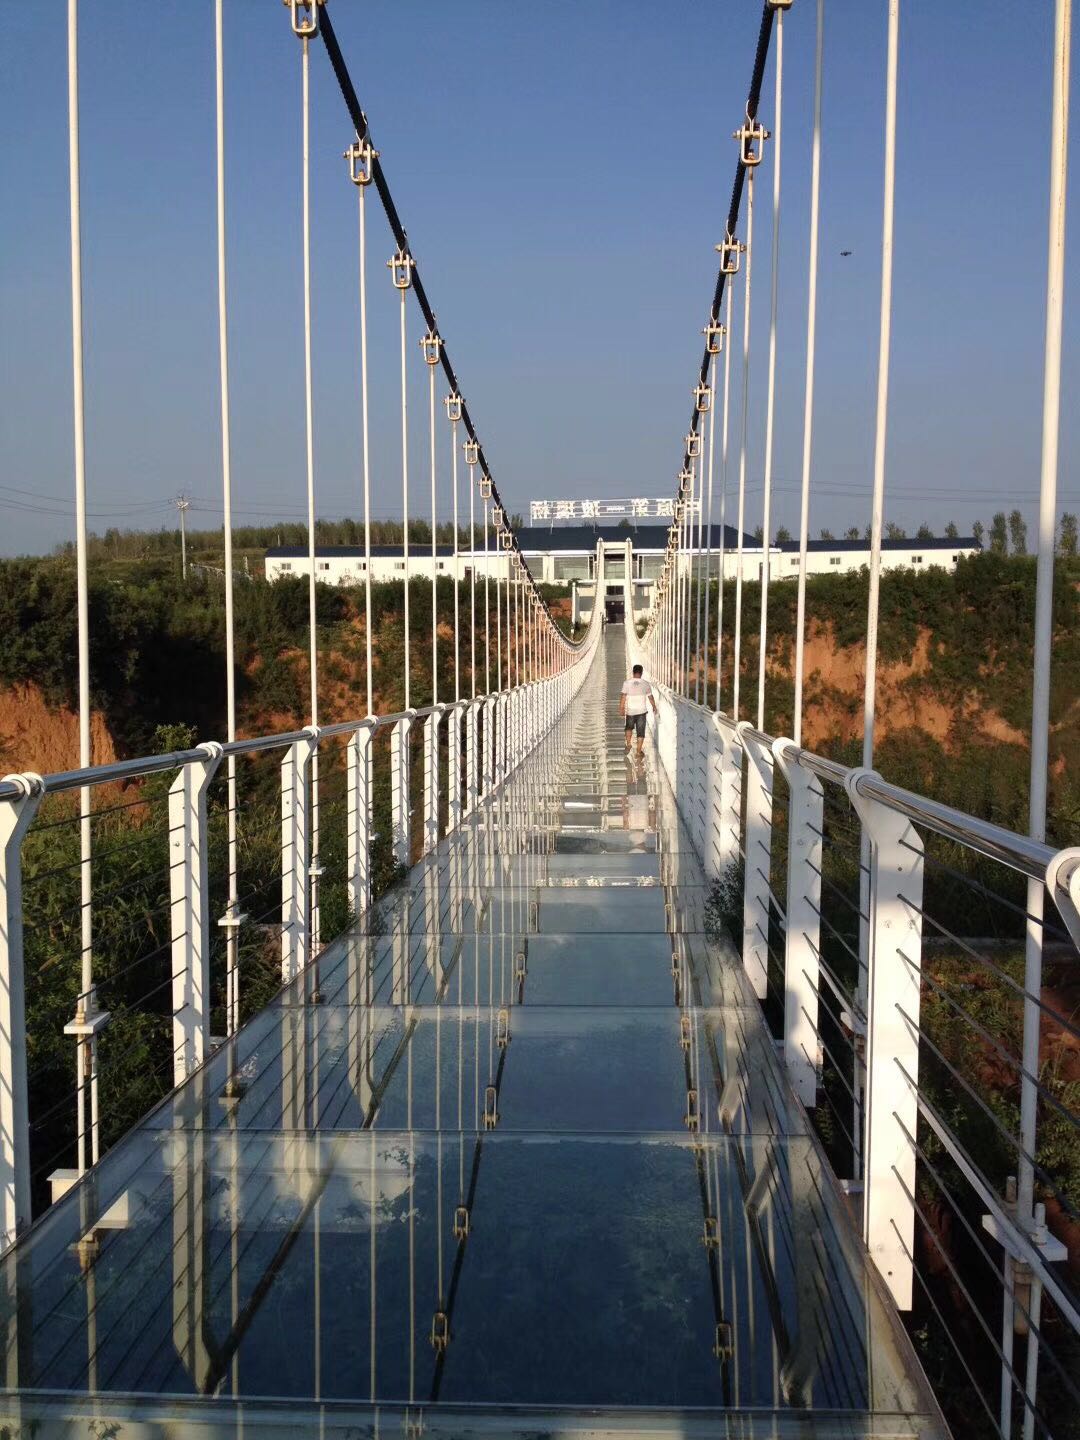 【携程攻略】北京十渡誓言玻璃栈道景点,喜欢玻璃栈道 玻璃吊桥 要是再刺激点就更好了 嘿嘿